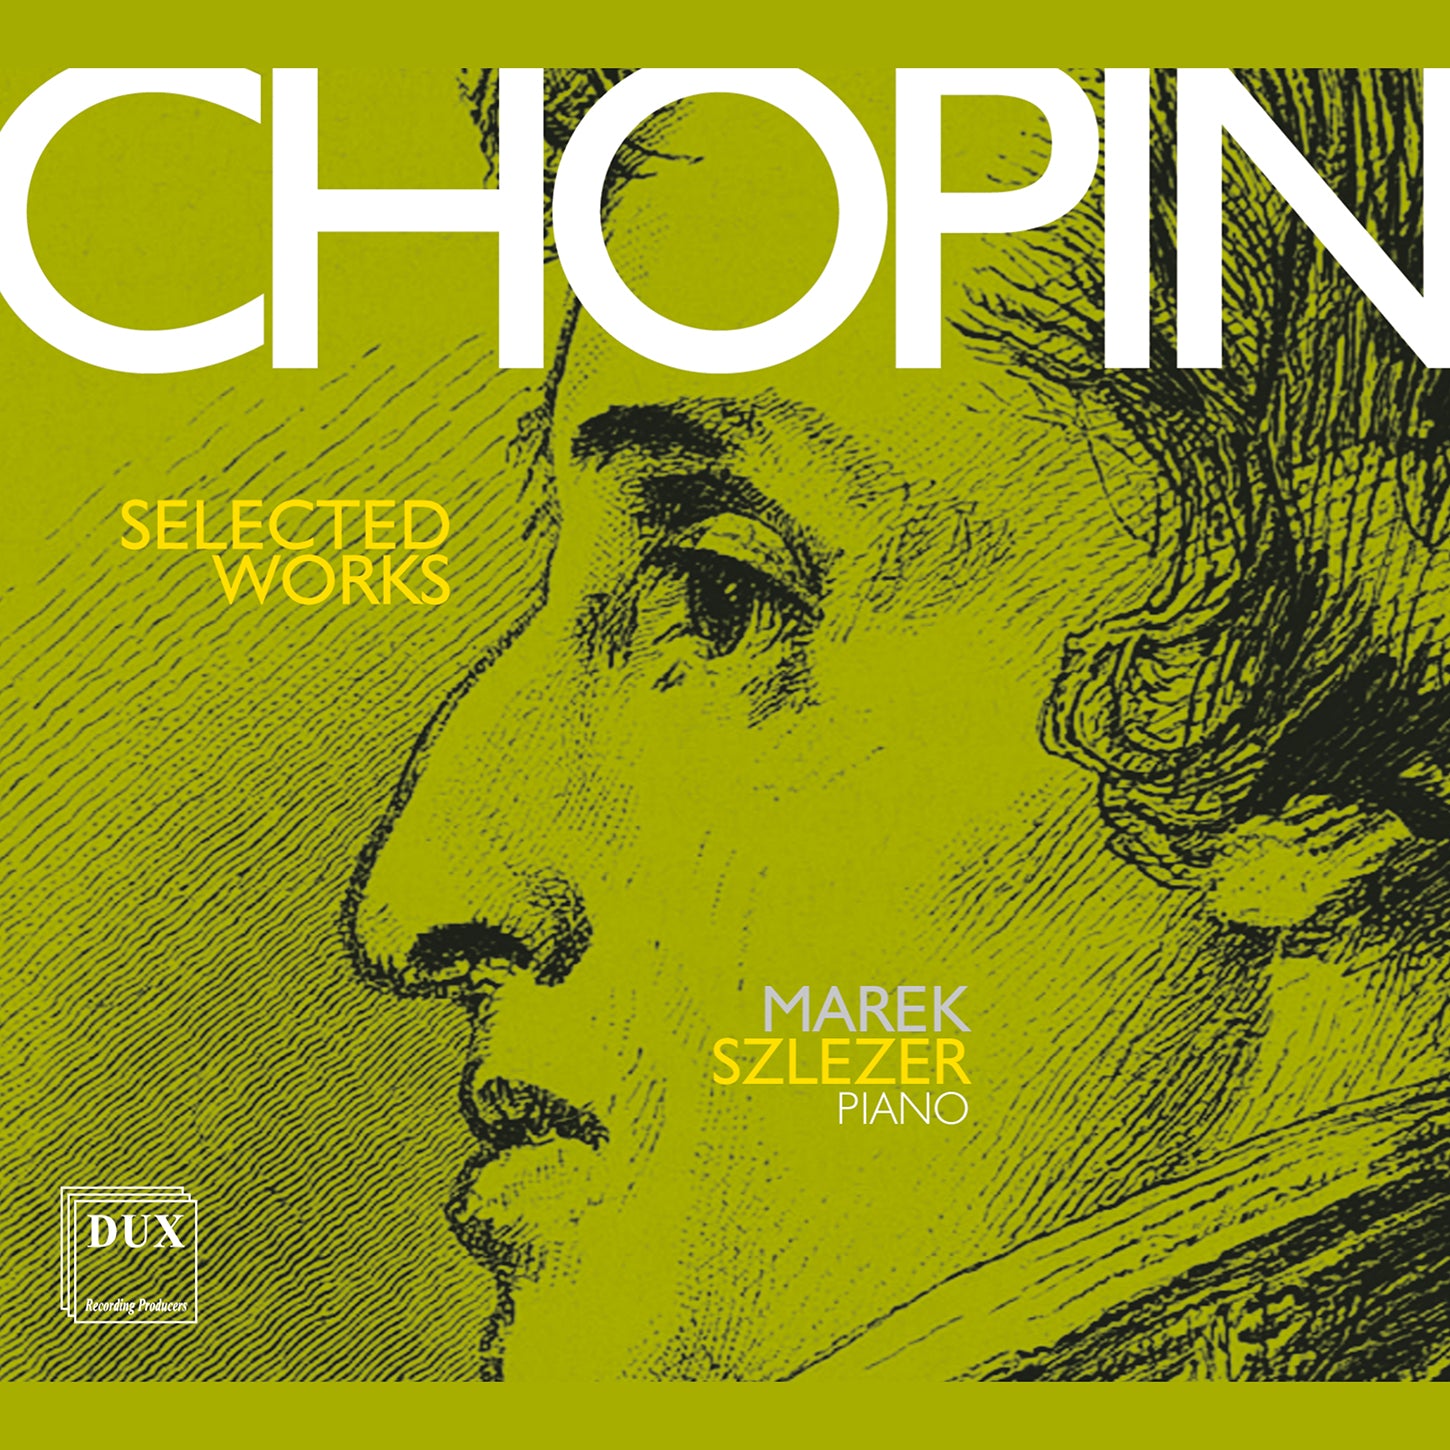 Chopin: Nocturnes, Polonaises, Mazurkas & More / Szlezer